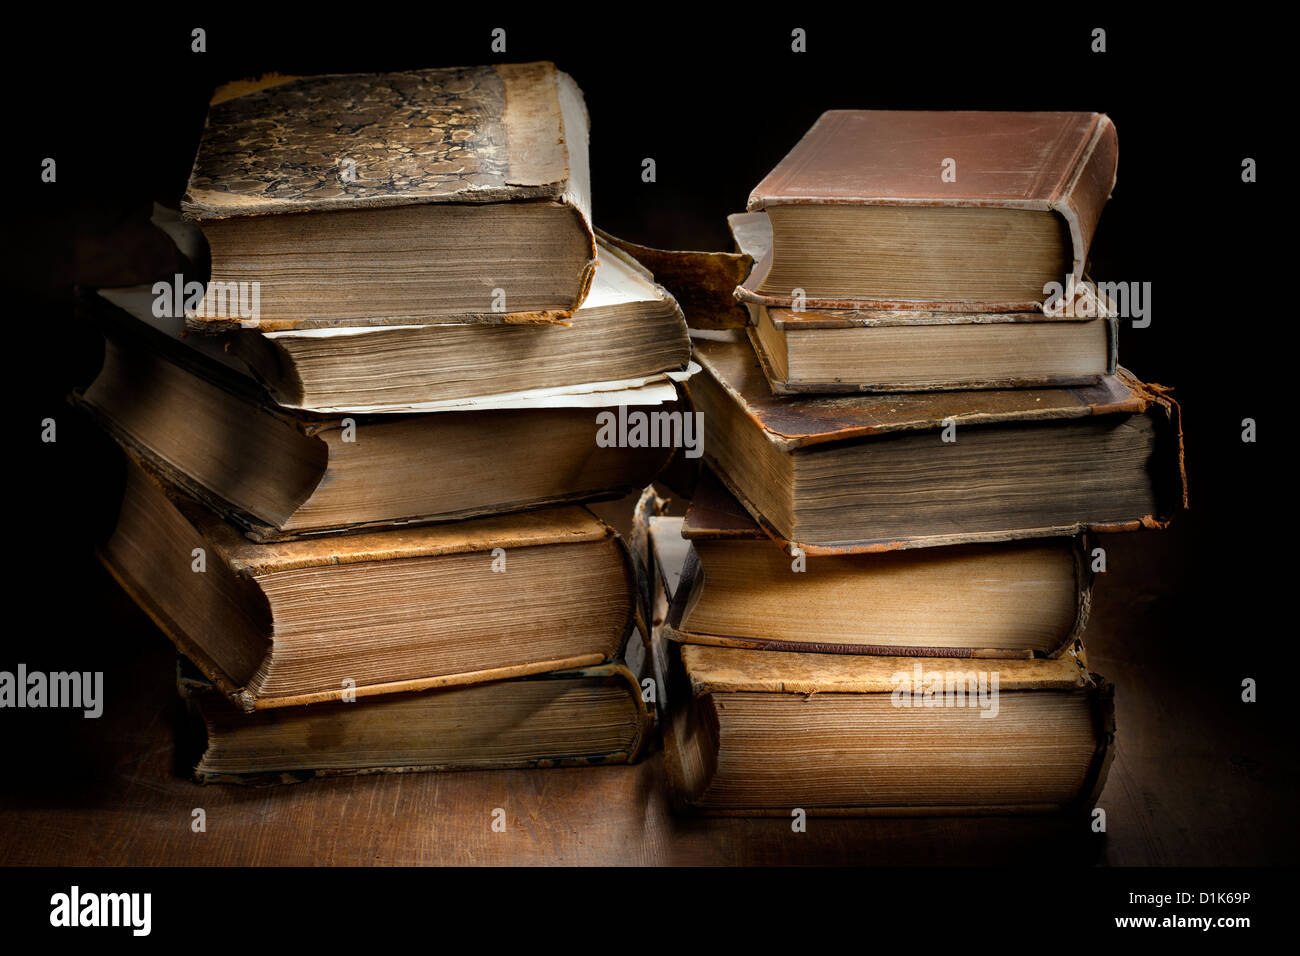 Sombre et moody photographie de deux piles de vieux livres anciens usés. Banque D'Images